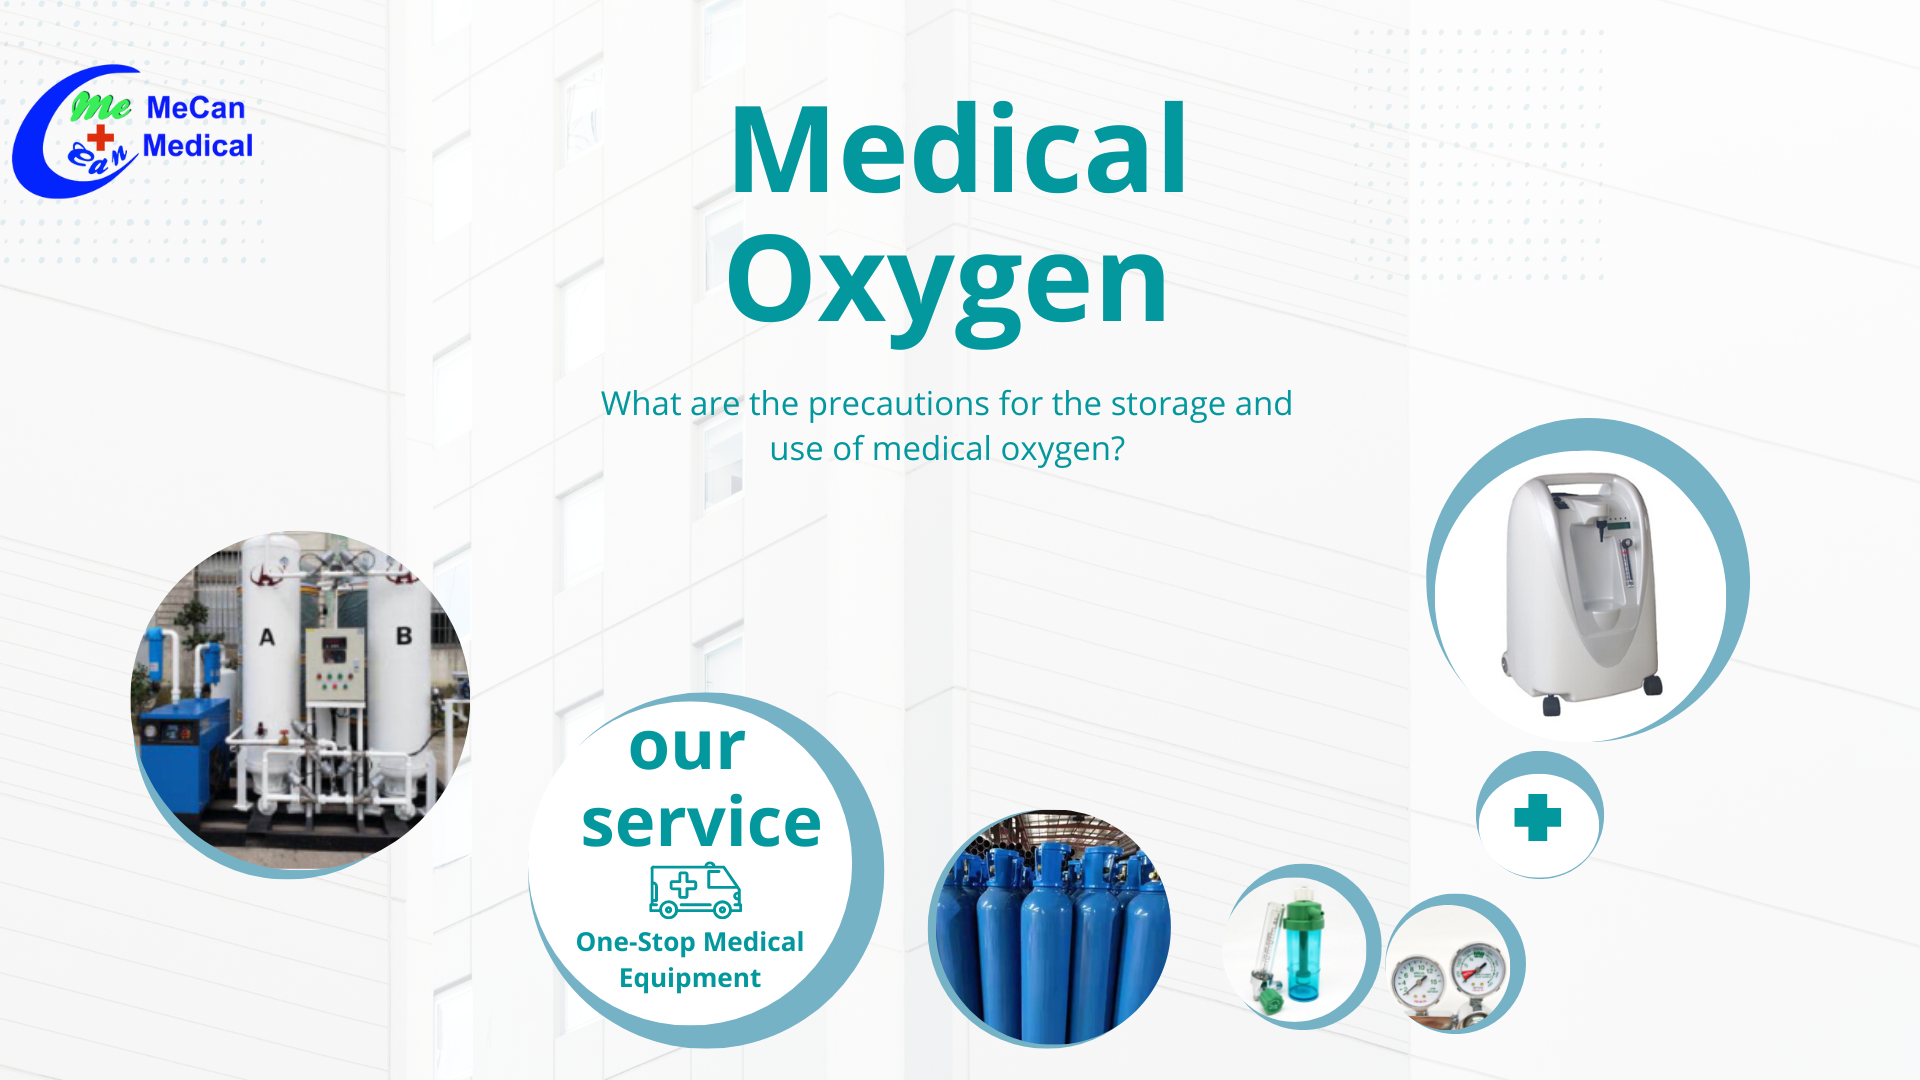 Milyen óvintézkedések szükségesek az orvosi oxigén tárolására és felhasználására?